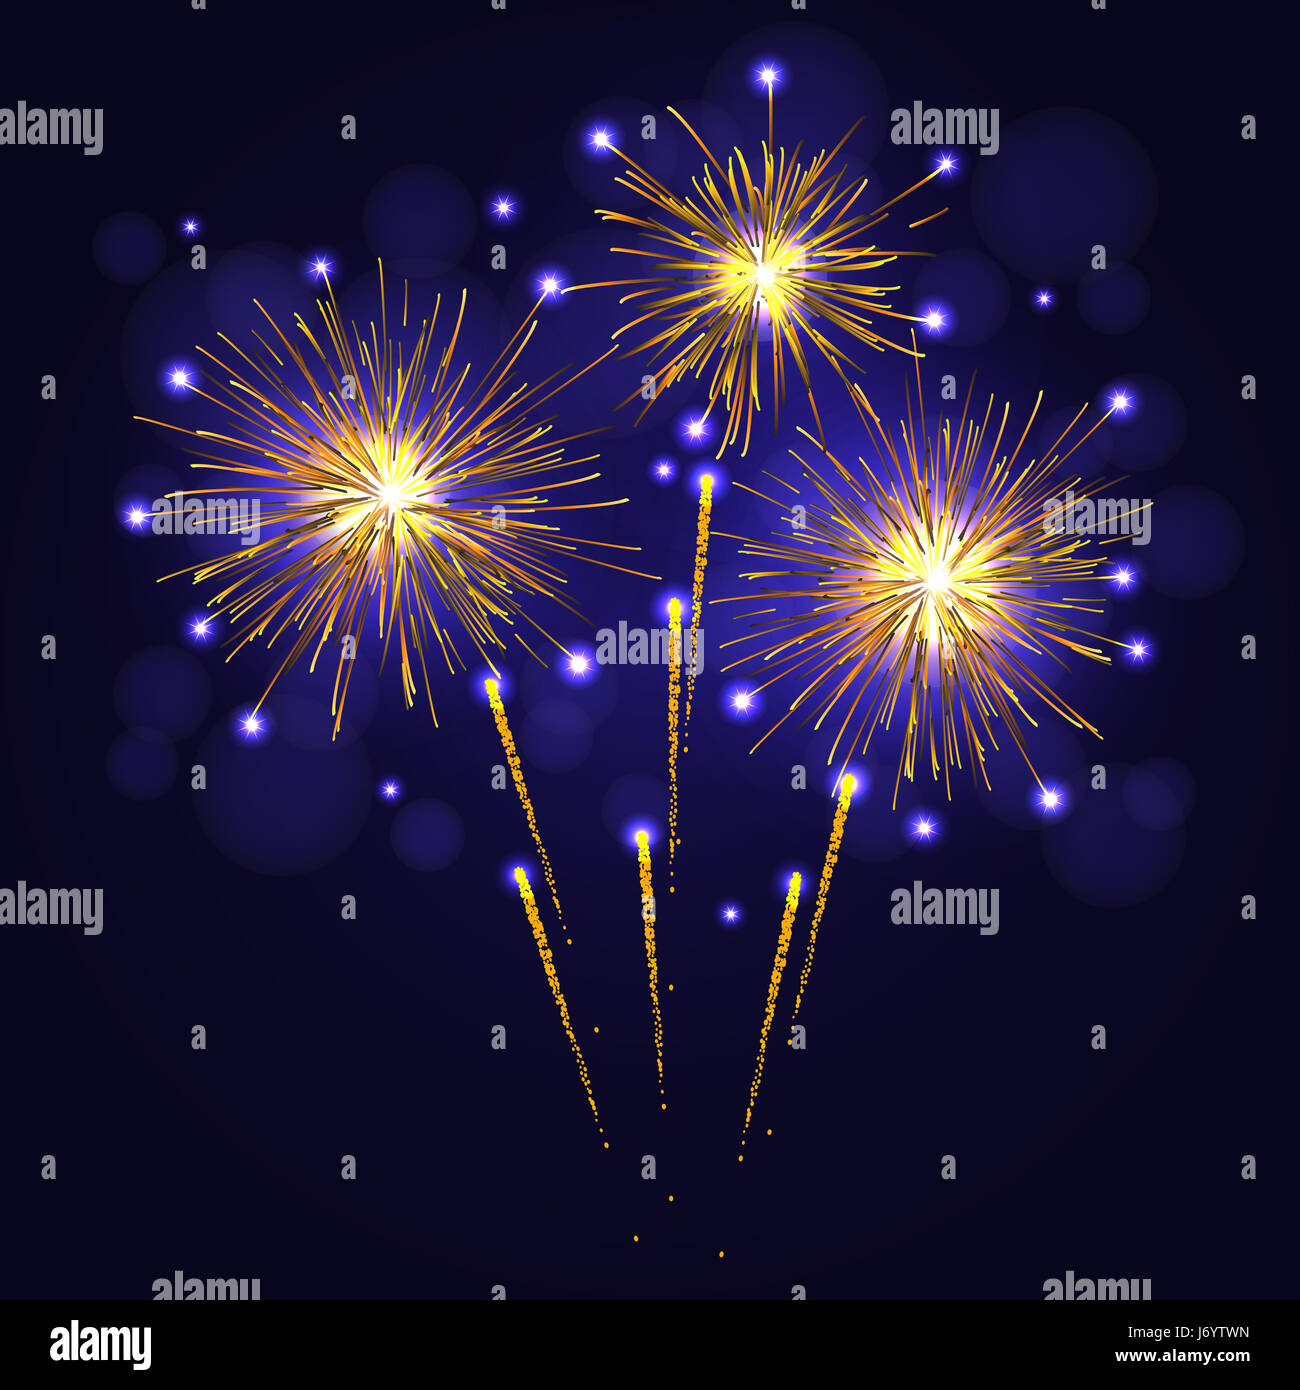 Célébration jaune d'artifice au-dessus du ciel nocturne. 4 juillet Jour de l'indépendance, fêtes de fin d'année historique Banque D'Images